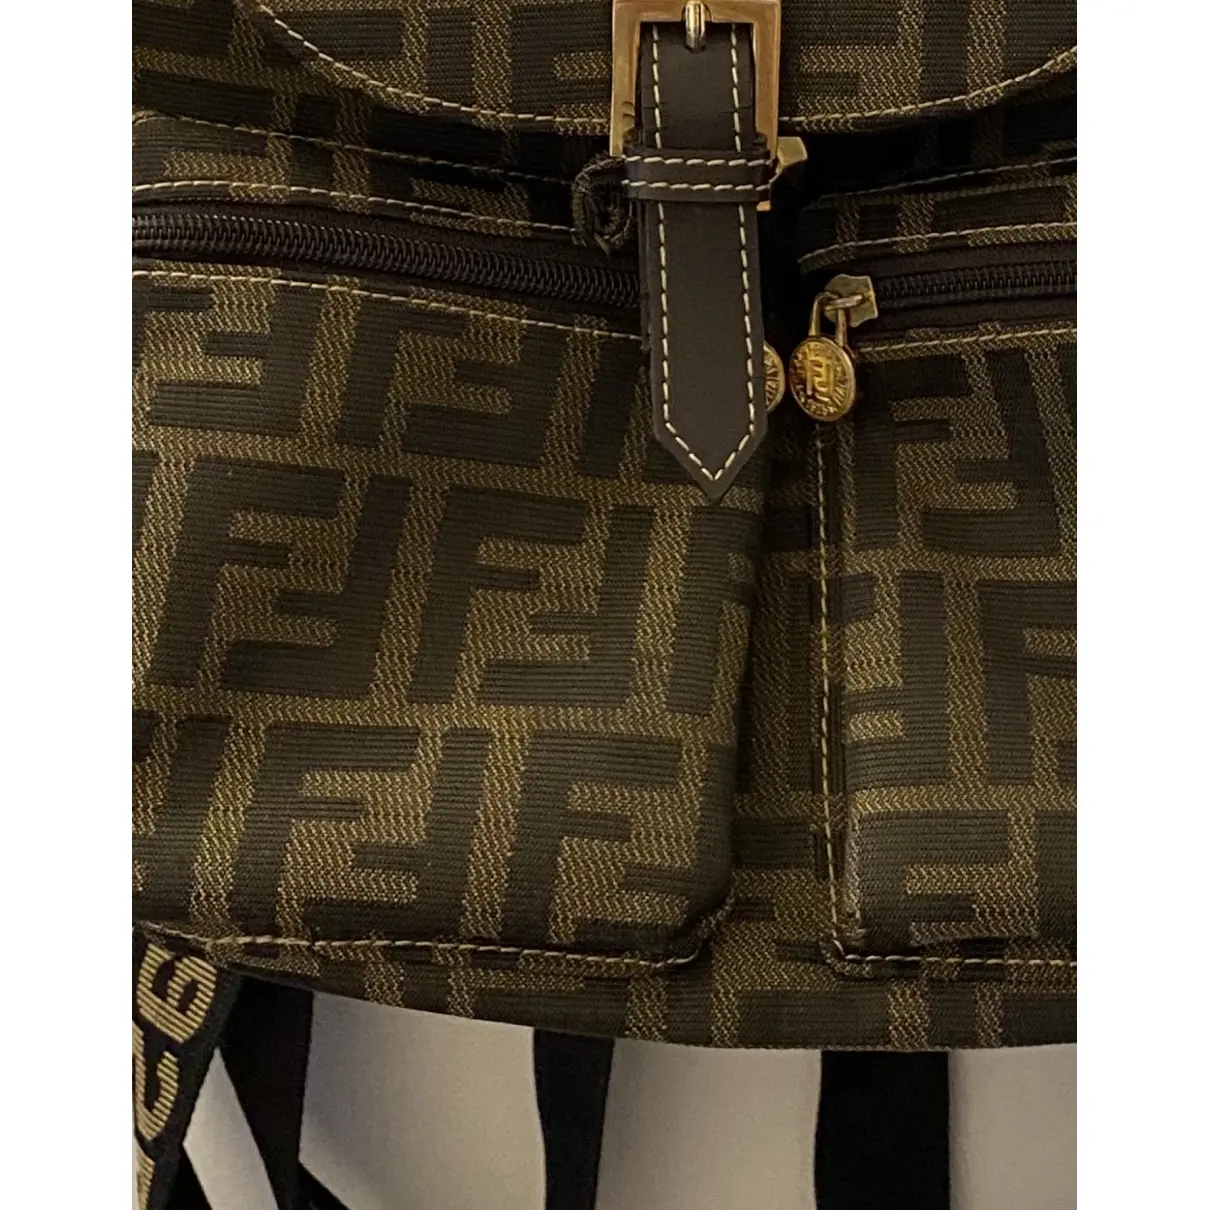 Fendi Cloth backpack for sale - Vintage